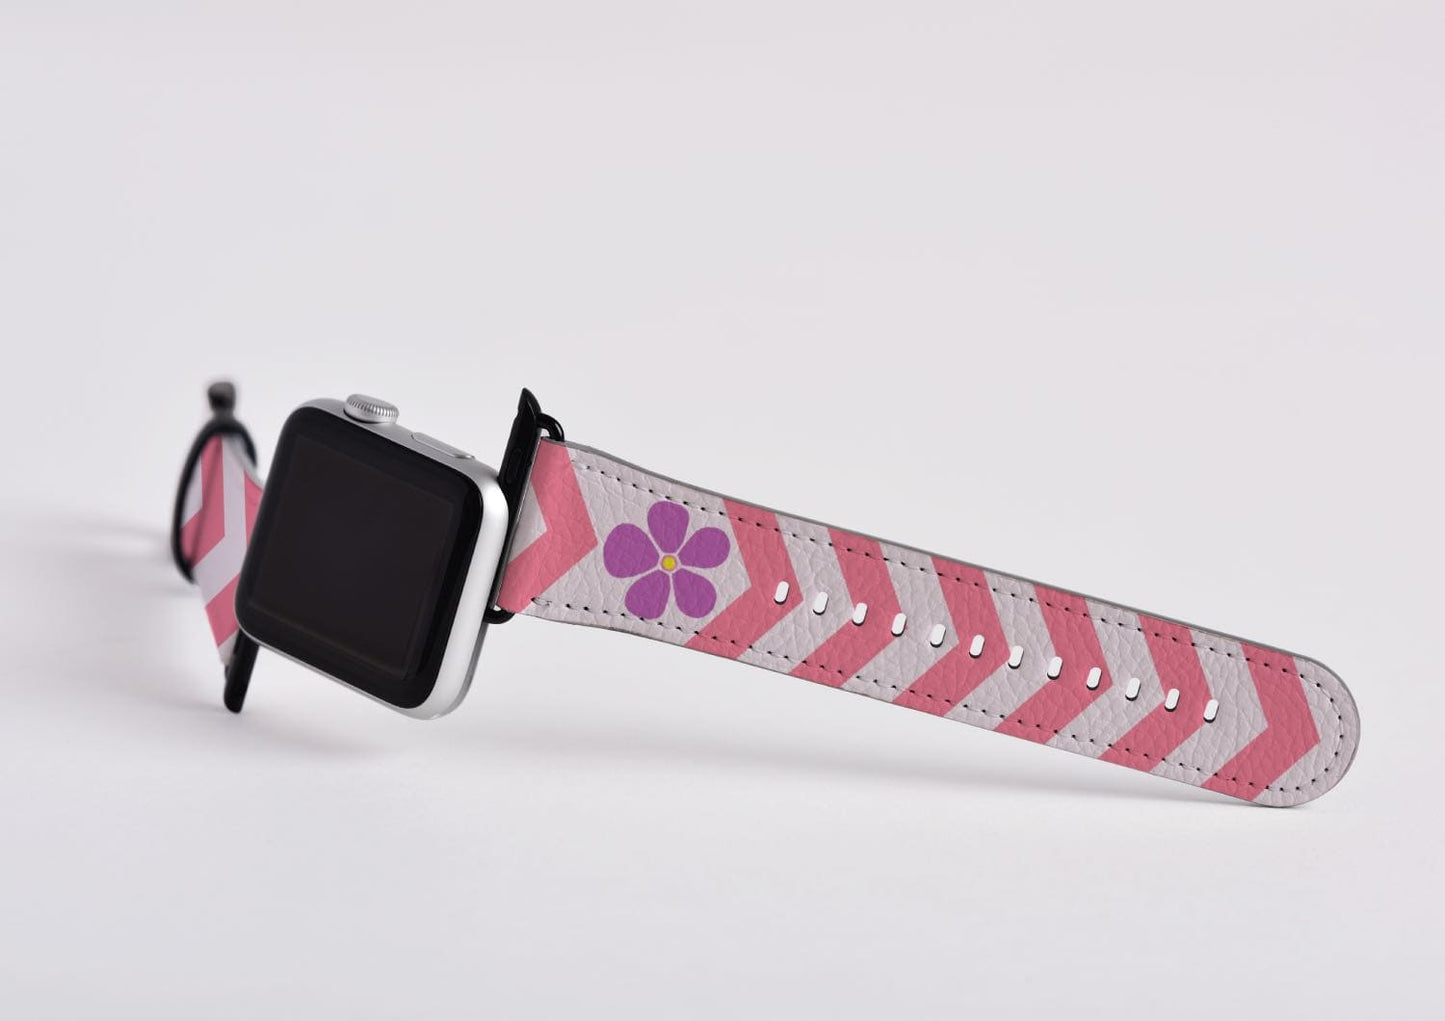 sapphic apple watch band, subtle chevron pattern, attach